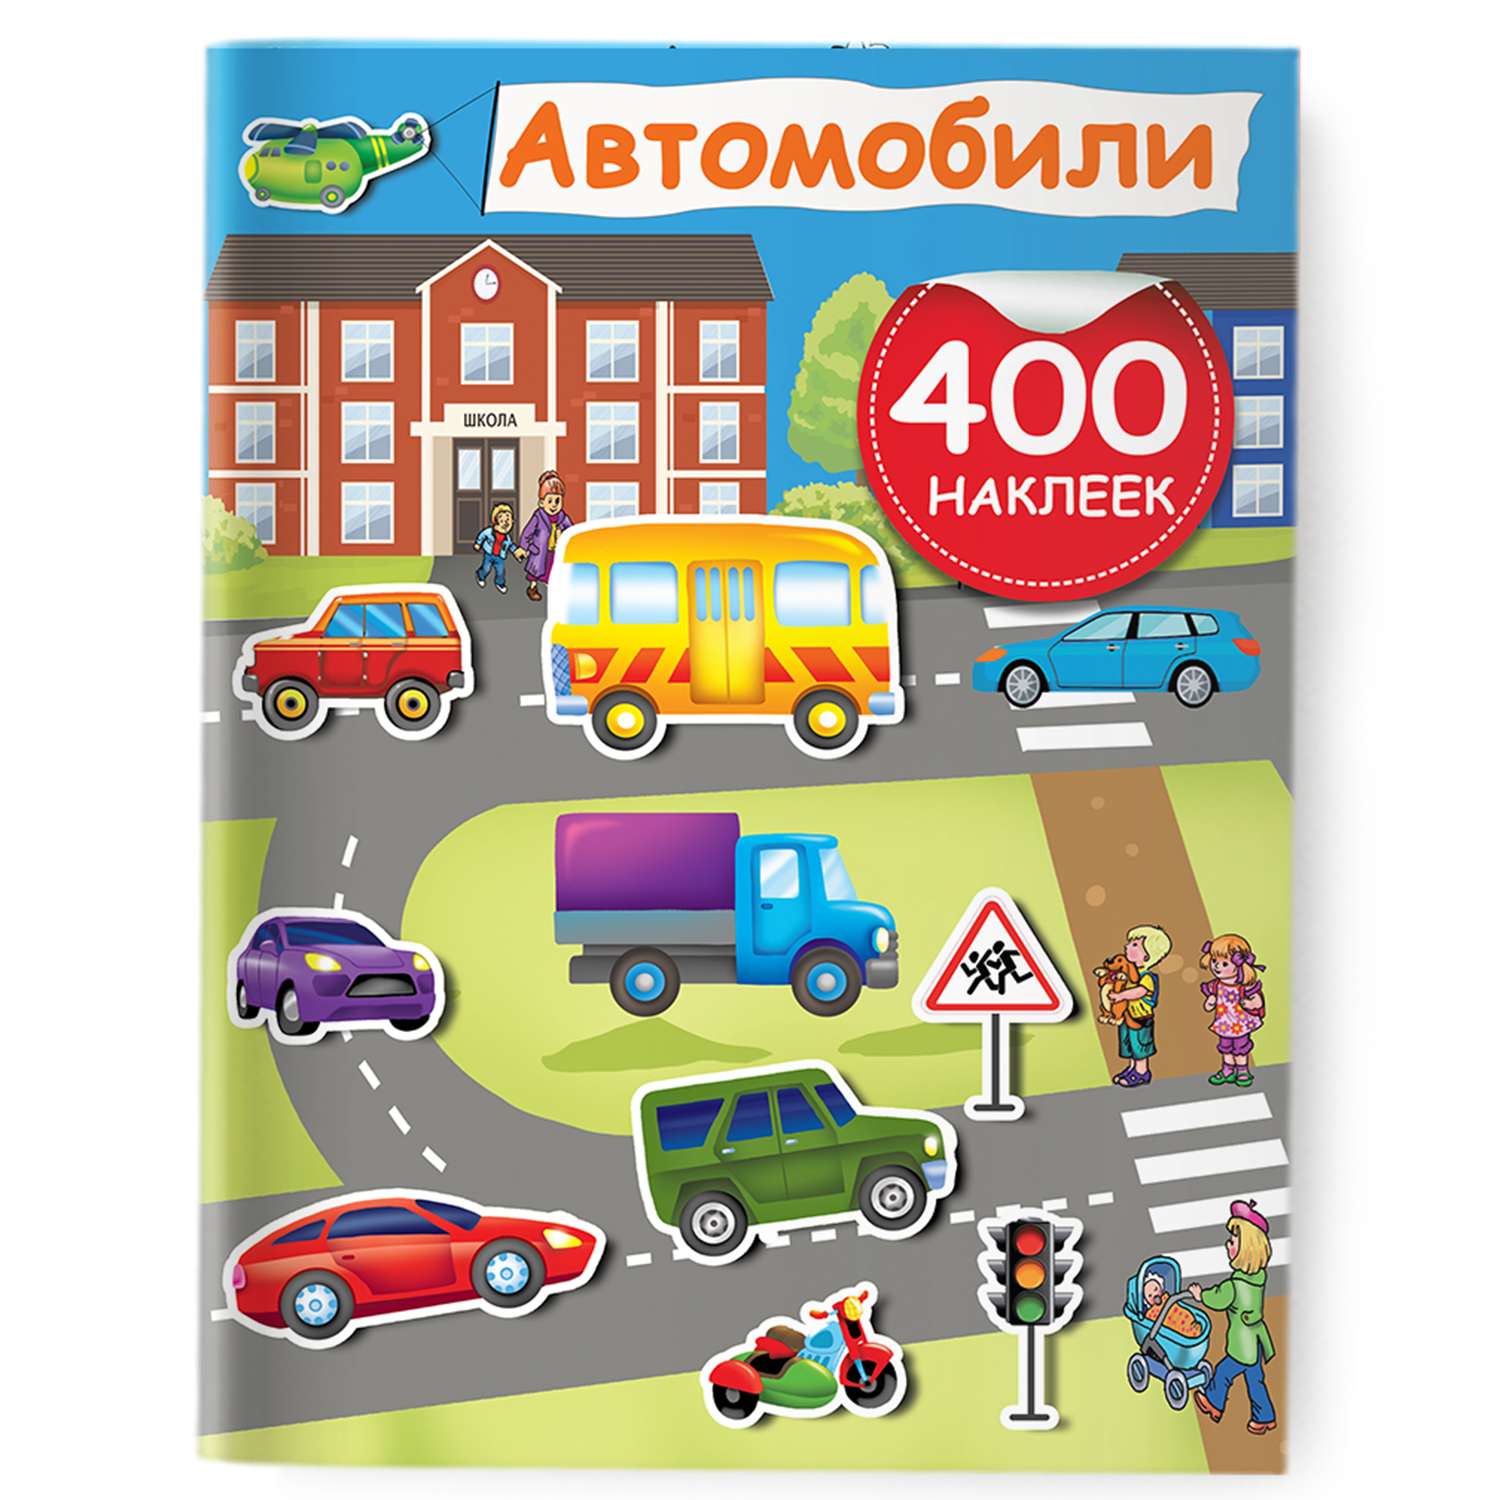 Книга Автомобили 400 наклеек - фото 1